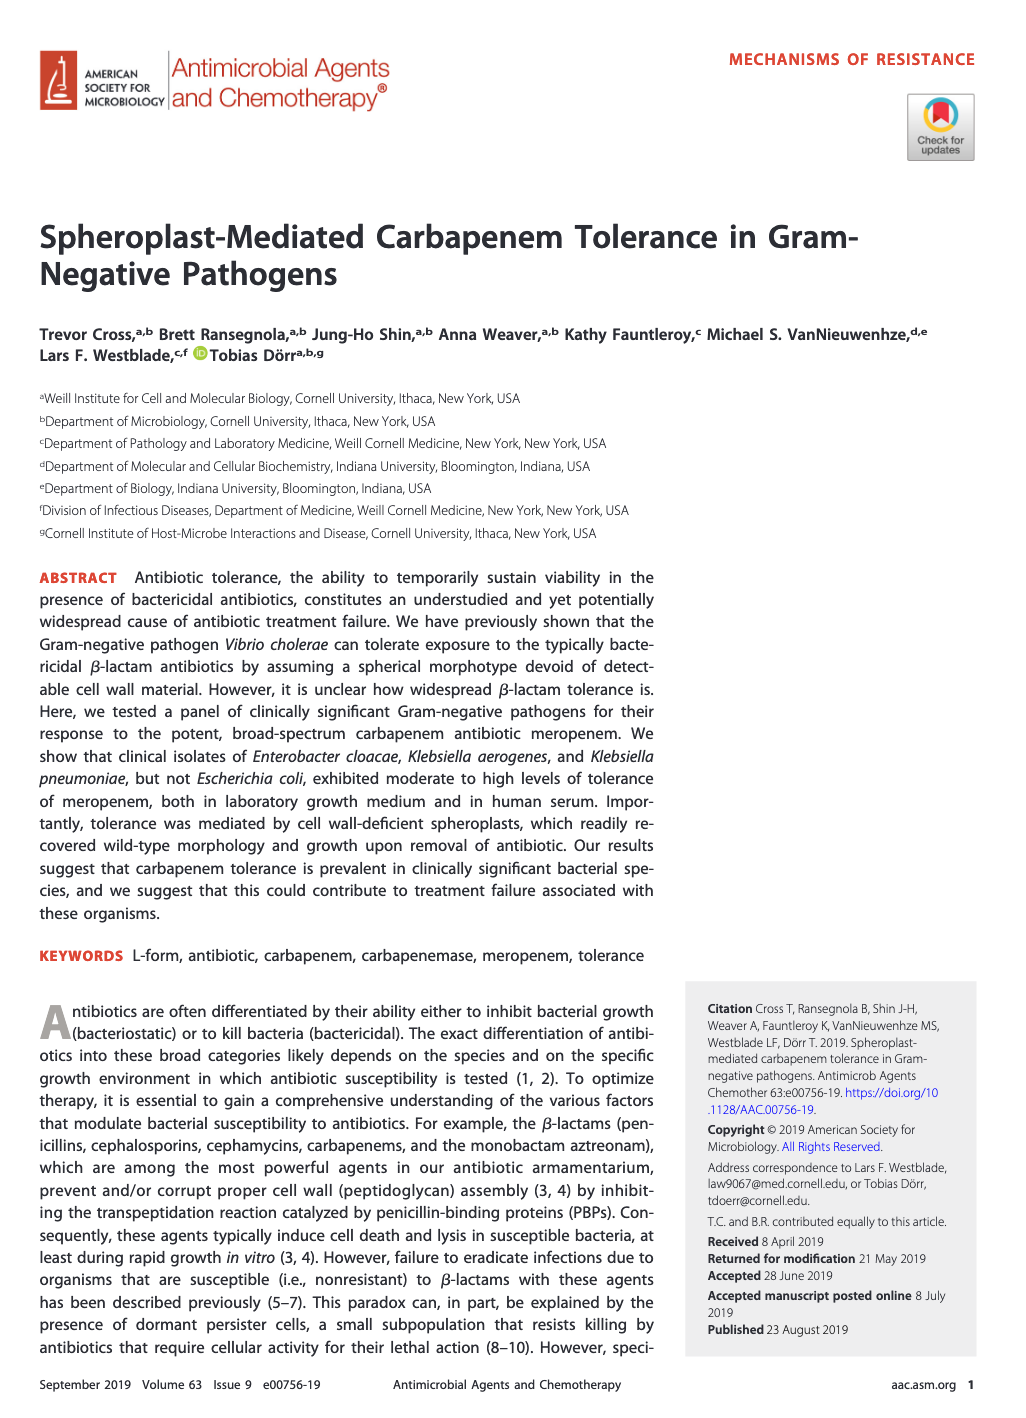 Spheroplast-Mediated Carbapenem Tolerance in Gram-Negative Pathogens